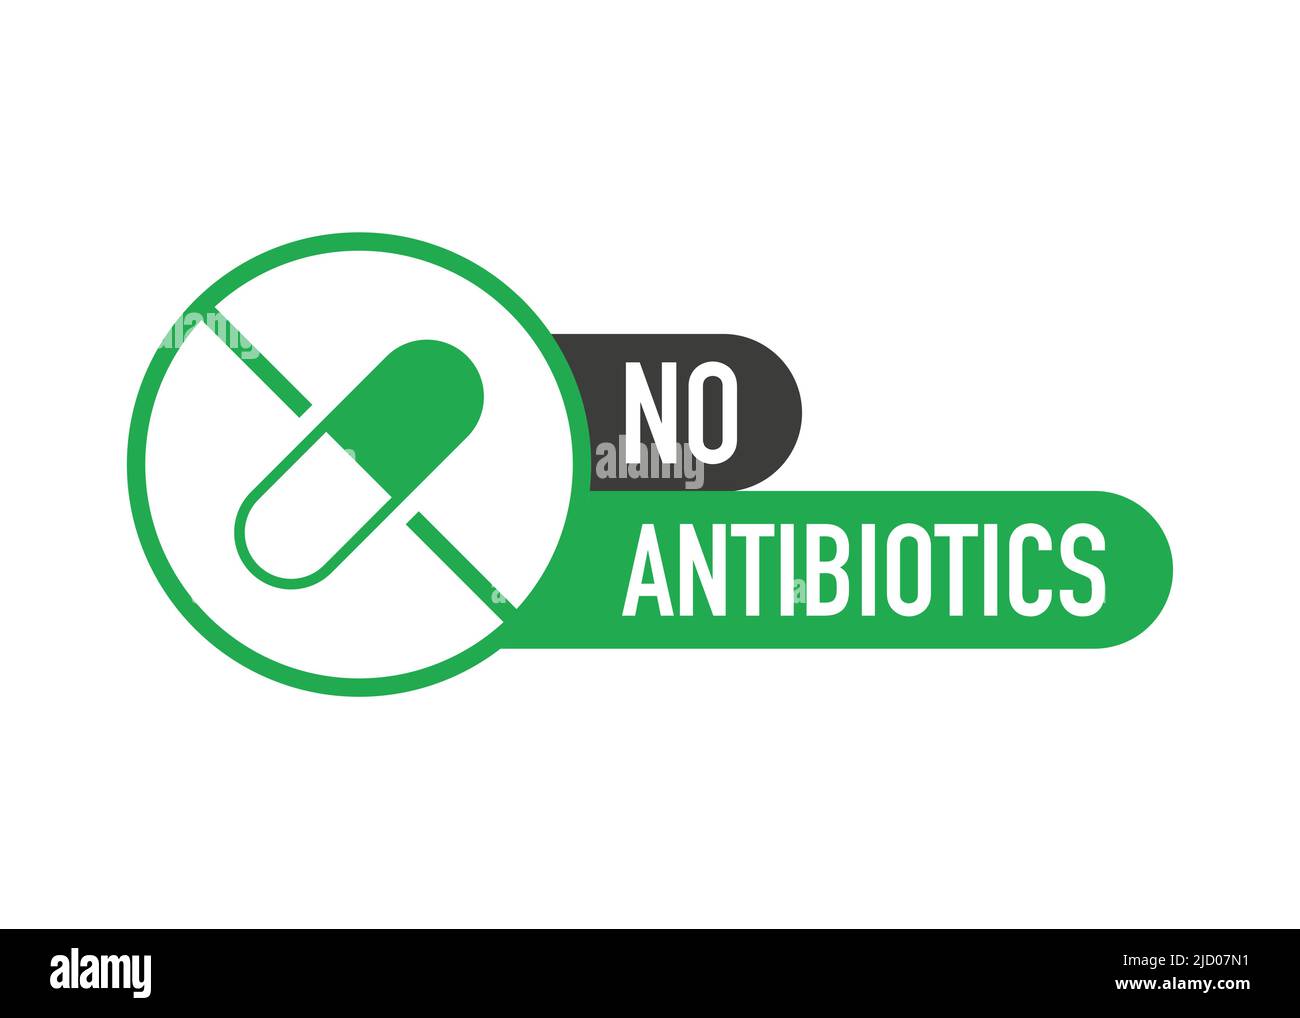 Keine Hormone, keine Antibiotika grünes flaches Banner auf weißem Hintergrund. Vektorgrafik. Stock Vektor